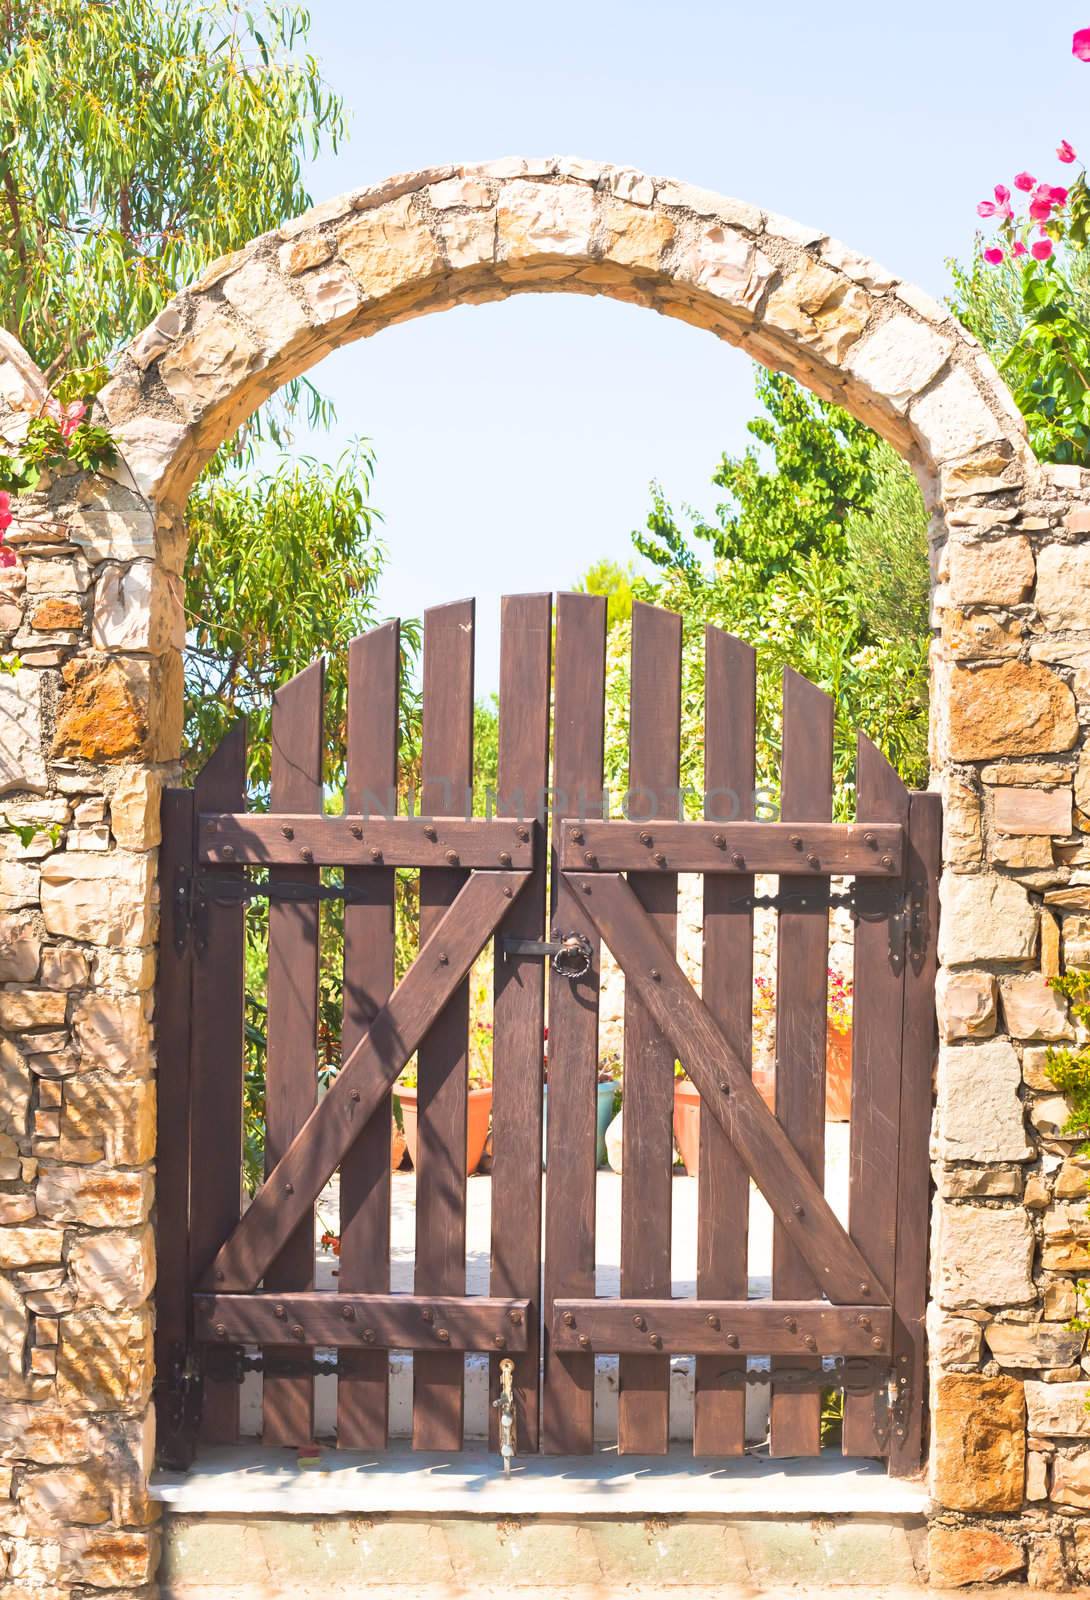 A nice stone arch gateway in a greek villa